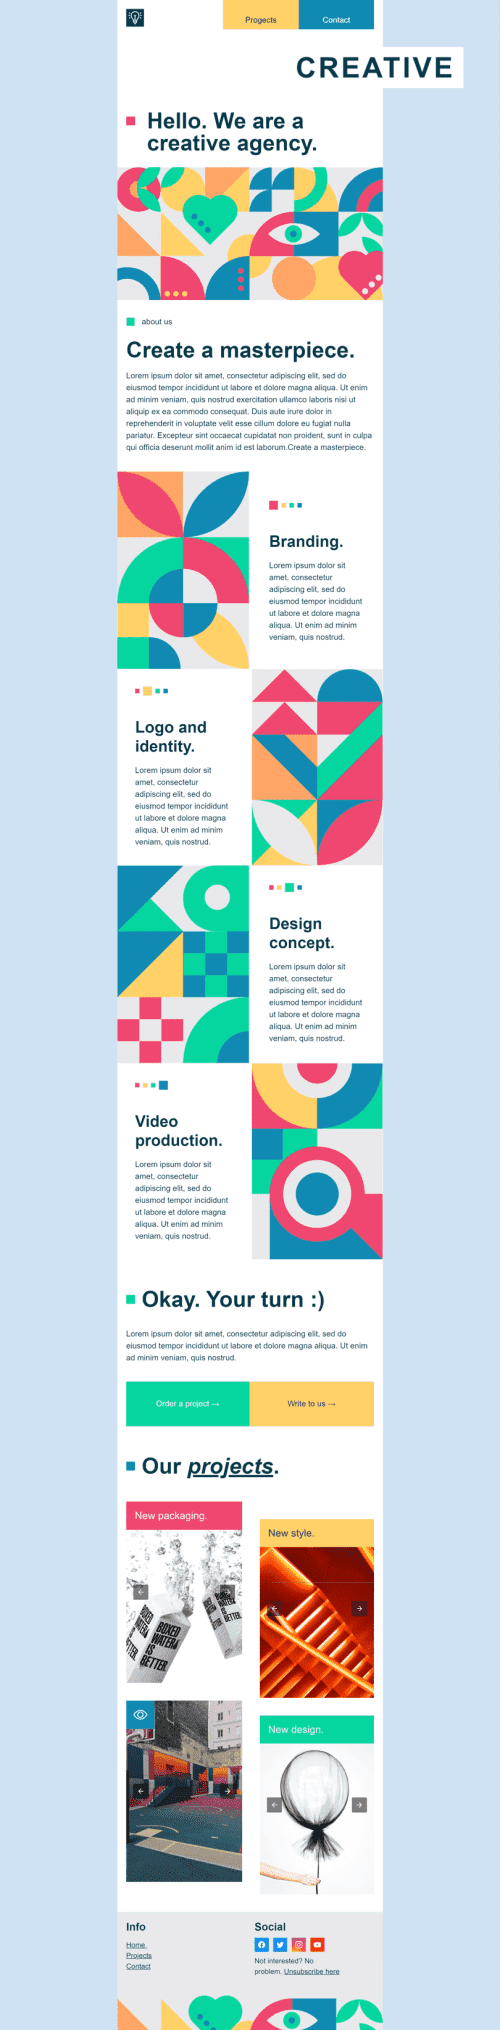 Modèle de courrier électronique Promo «Agence créative» pour le secteur Design Affichage ordinateur